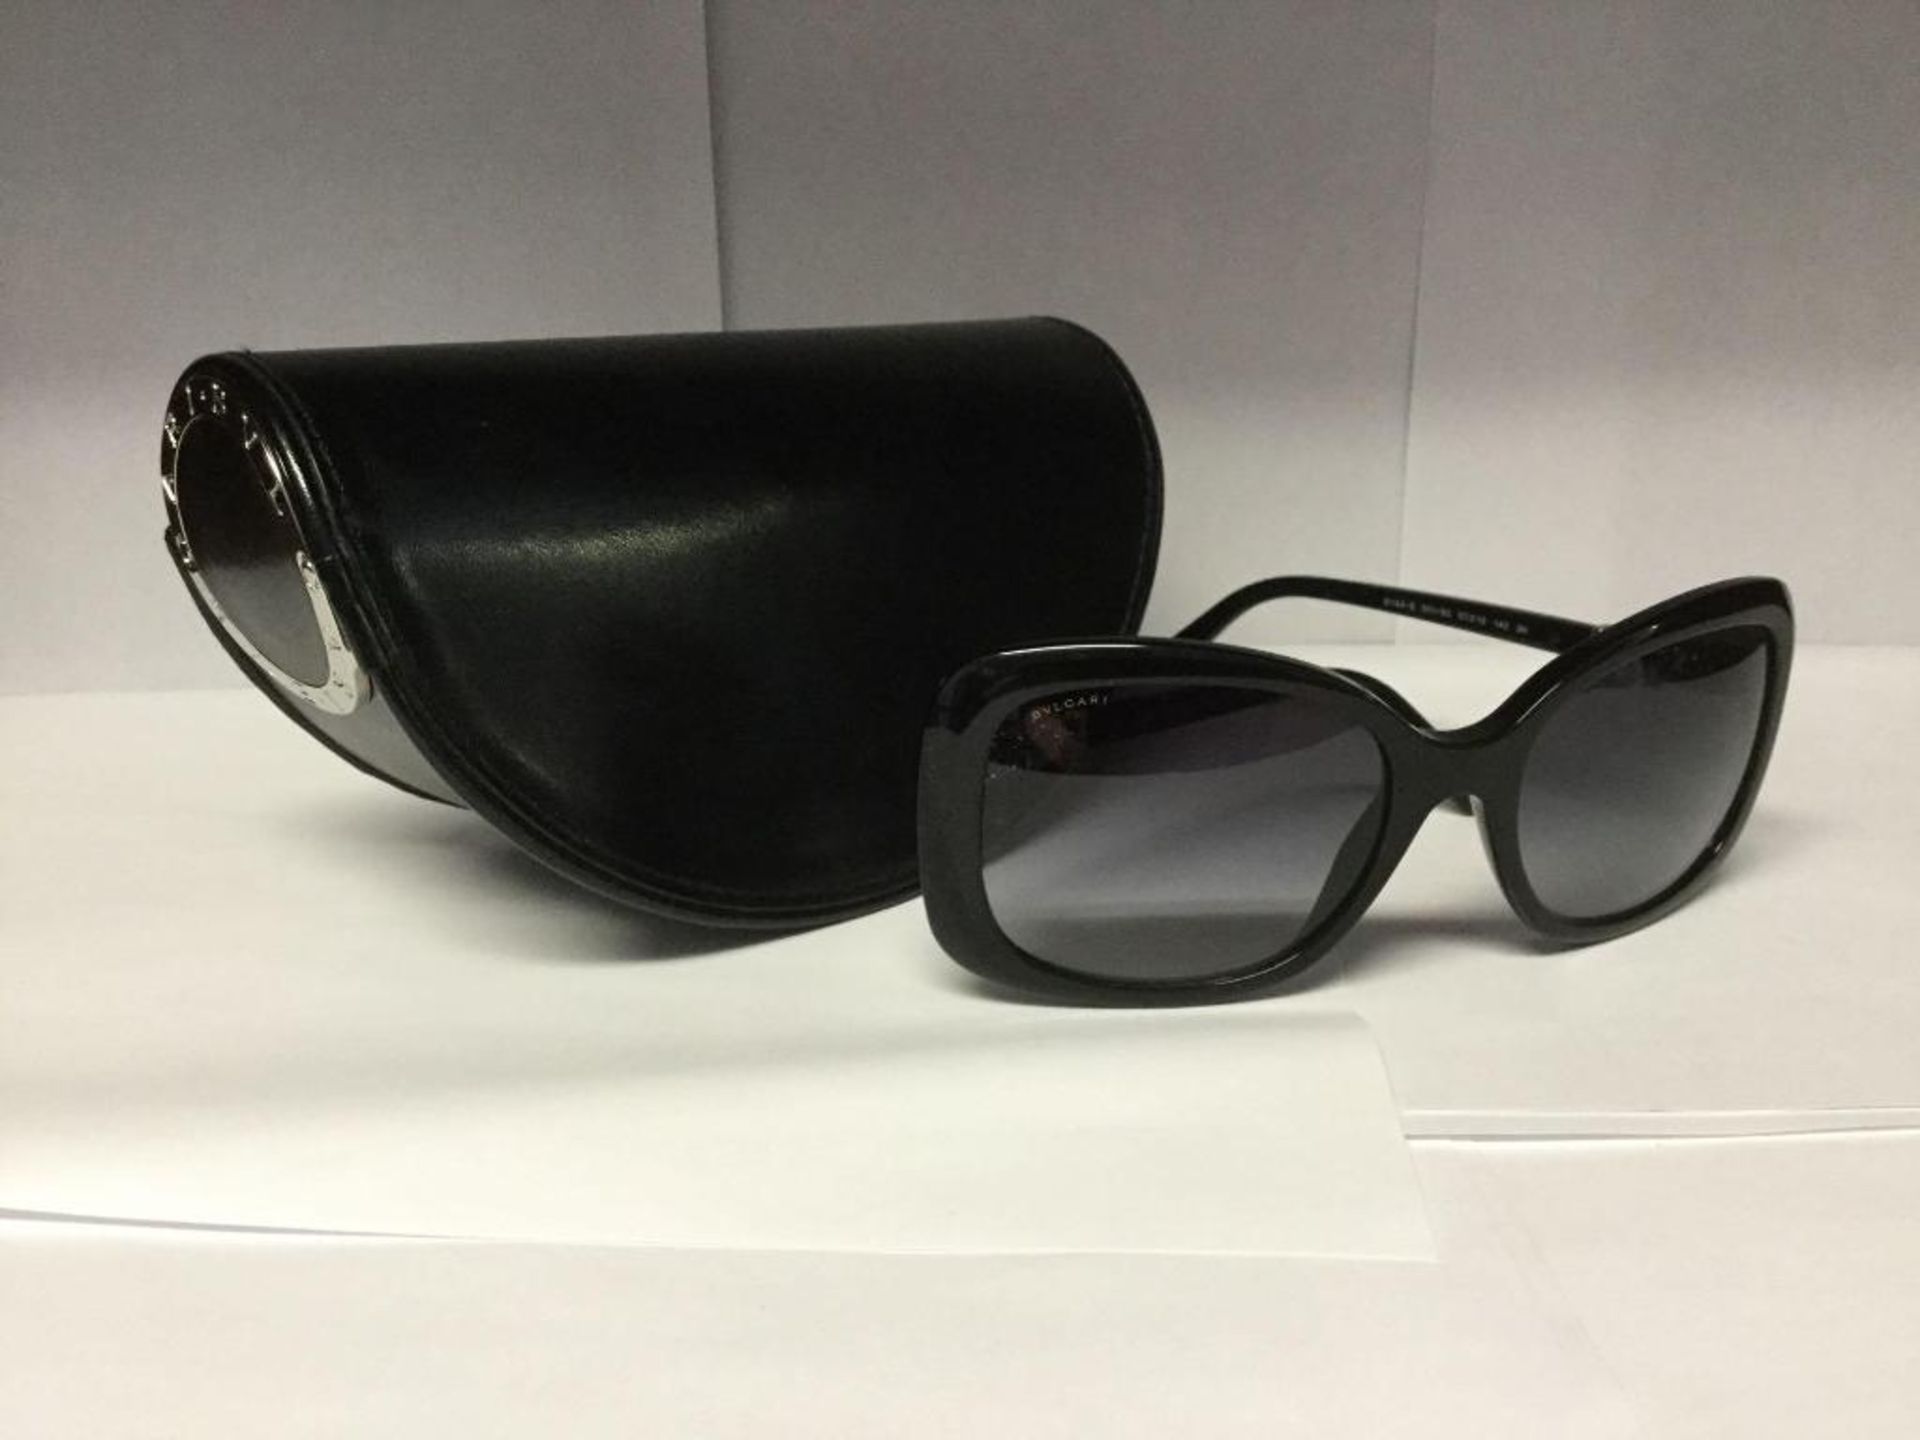 BVLGARI Sunglasses with case - Value $ 200